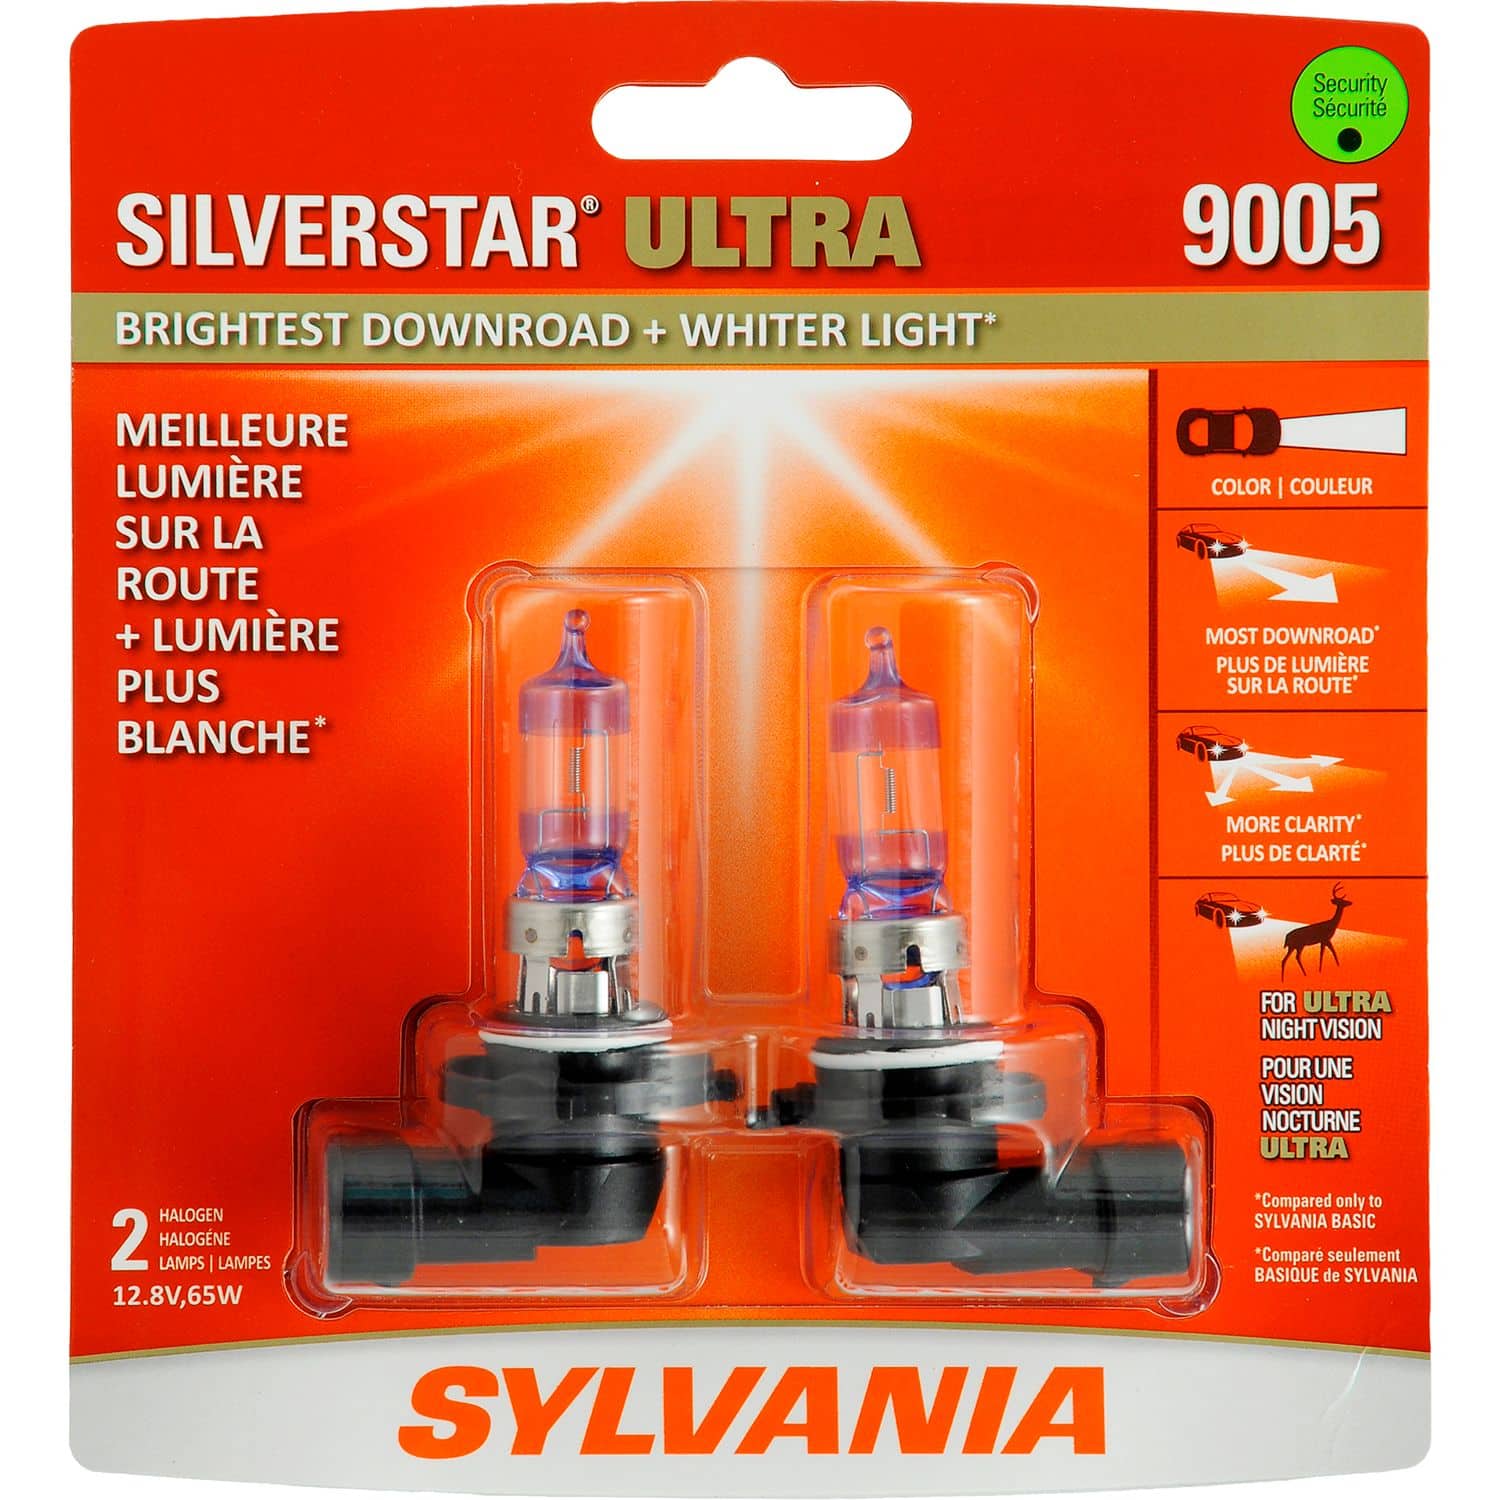 9005 Sylvania SilverStar® ULTRA Halogen Headlight Bulb, Whiter Light, 2-pk